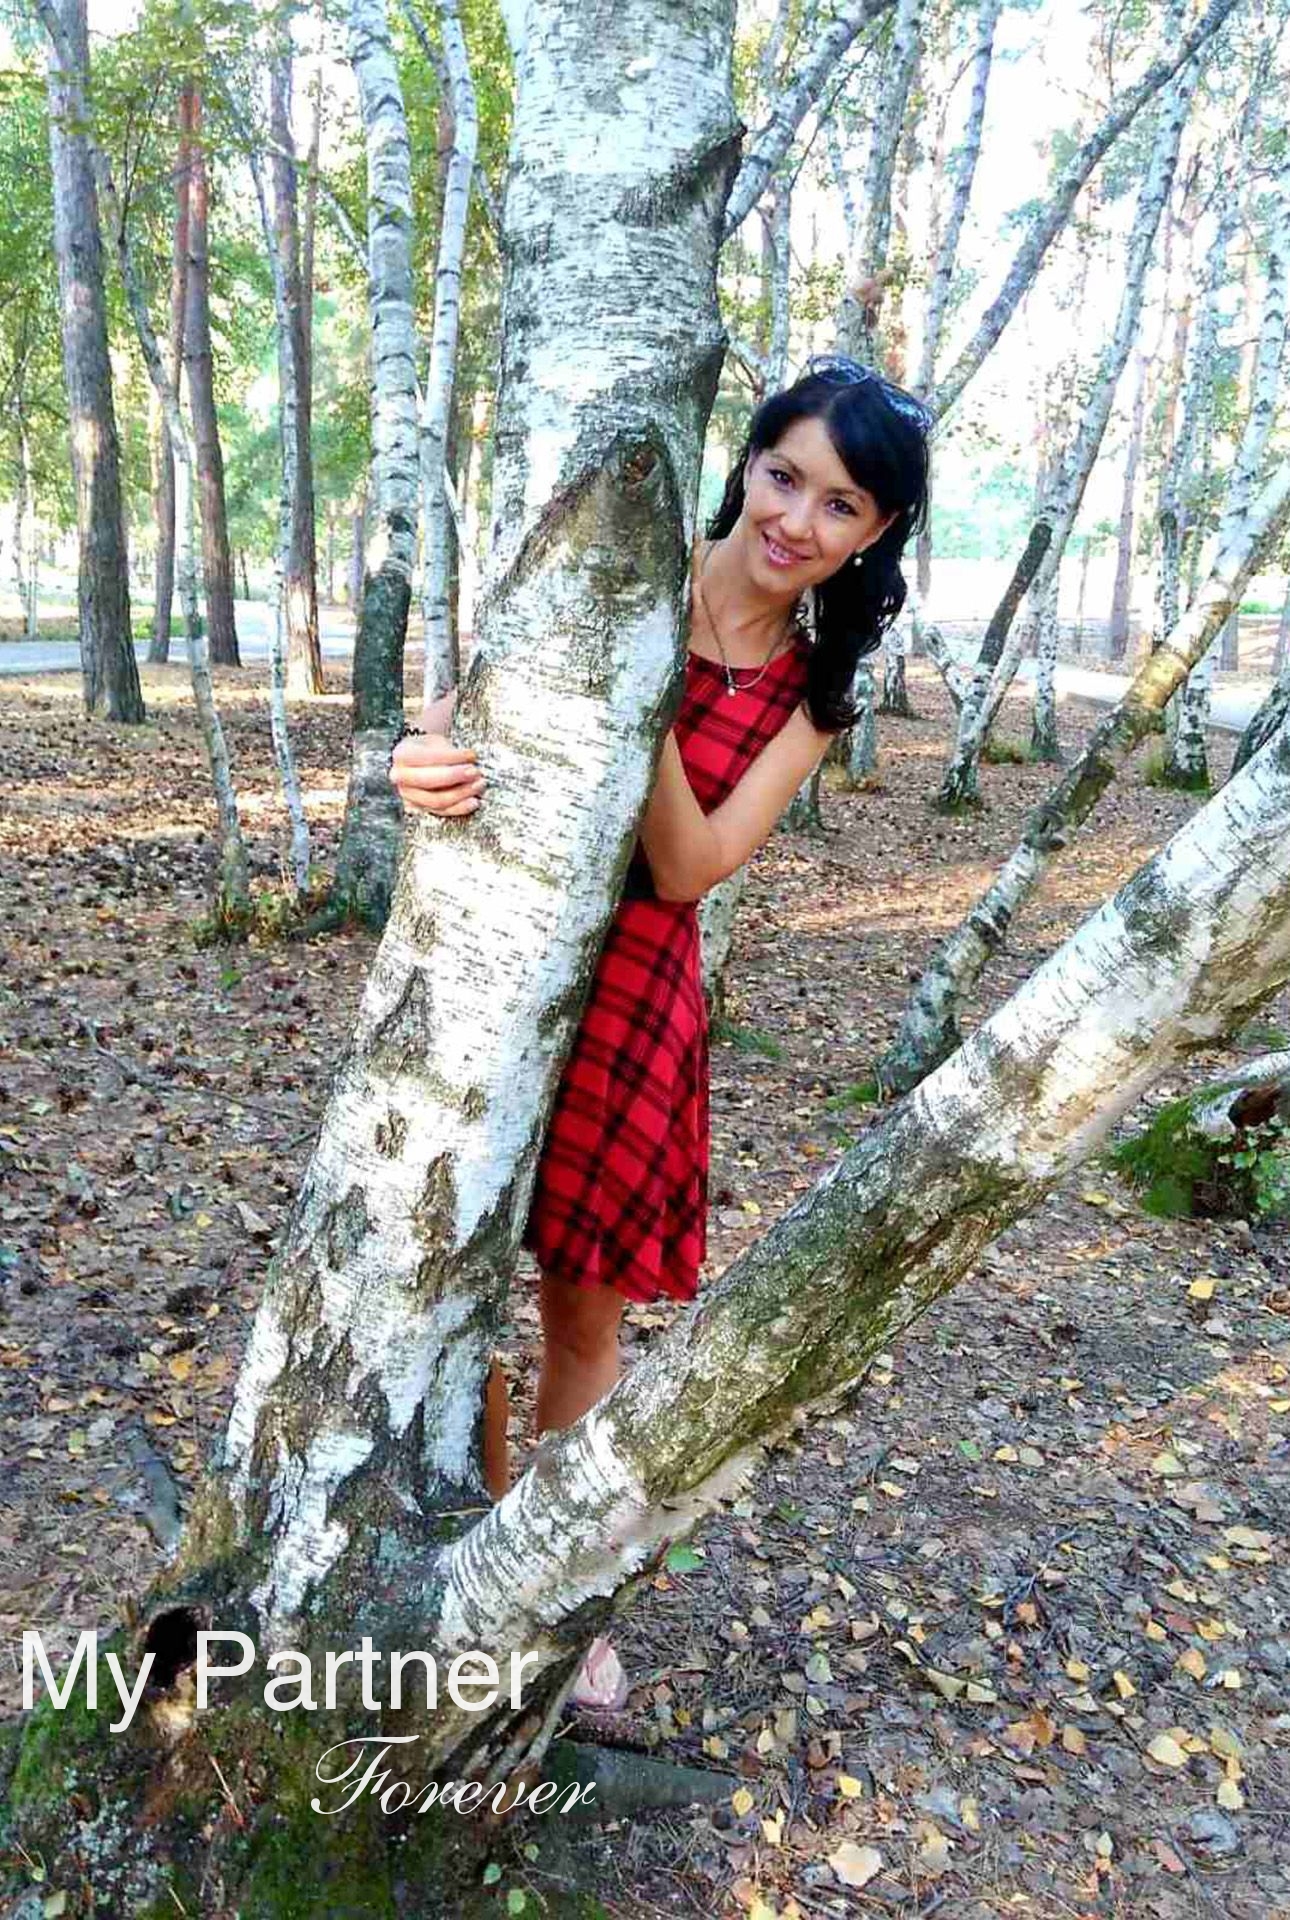 Dating Site to Meet Pretty Ukrainian Girl Marina from Zaporozhye, Ukraine